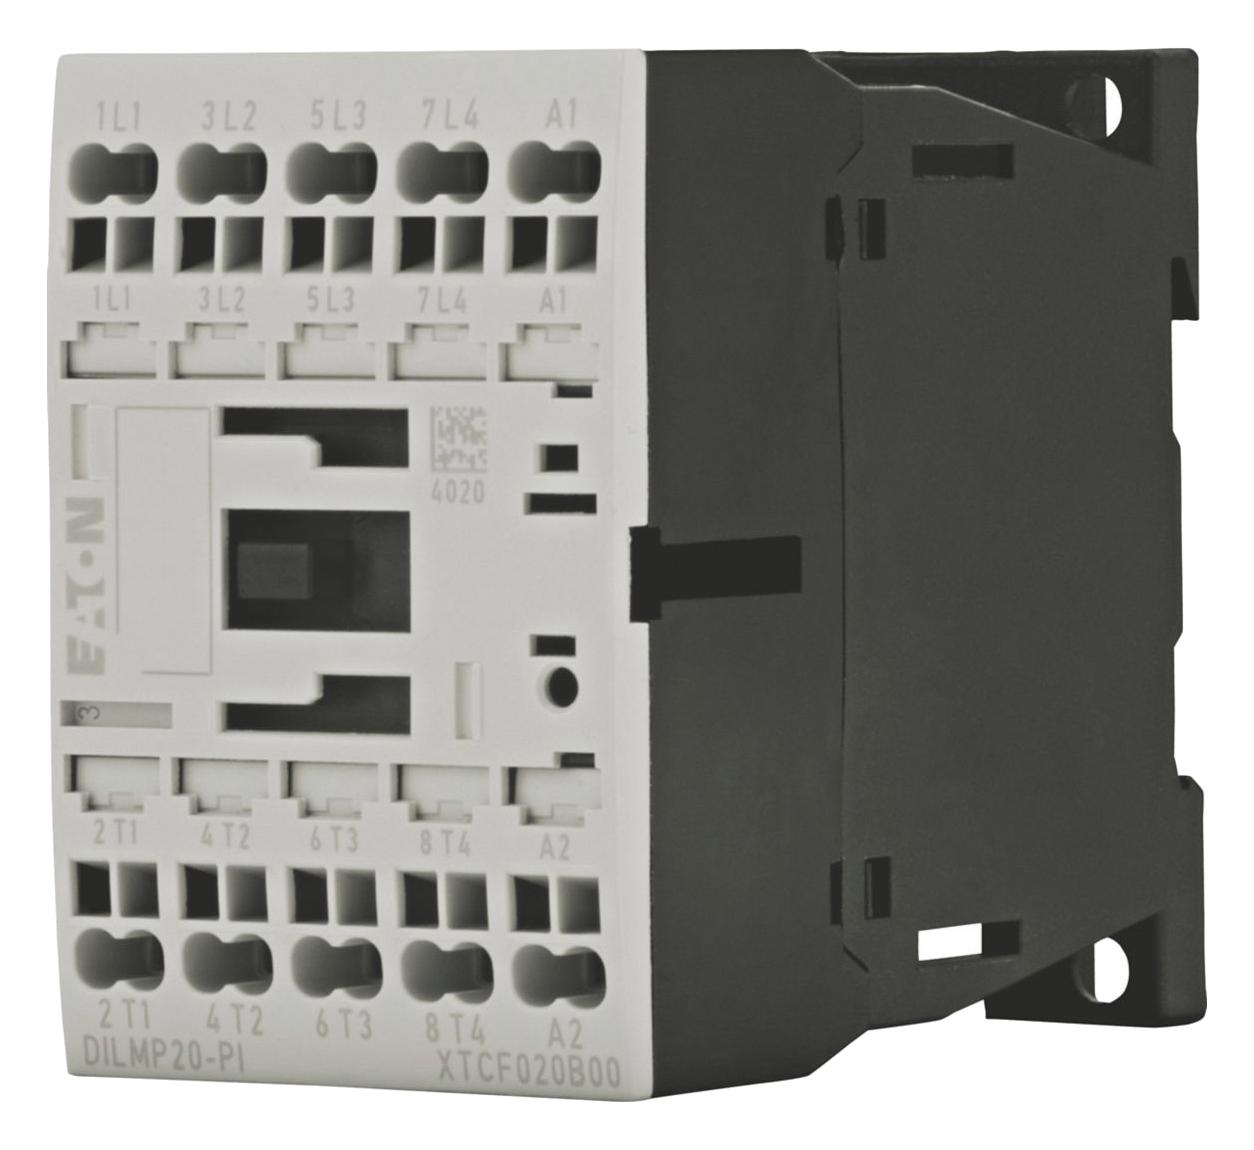 Eaton Moeller Dilmp20(42V50Hz,48V60Hz)-Pi Contactor, 4Pst-No, 42Vac, Din/panel